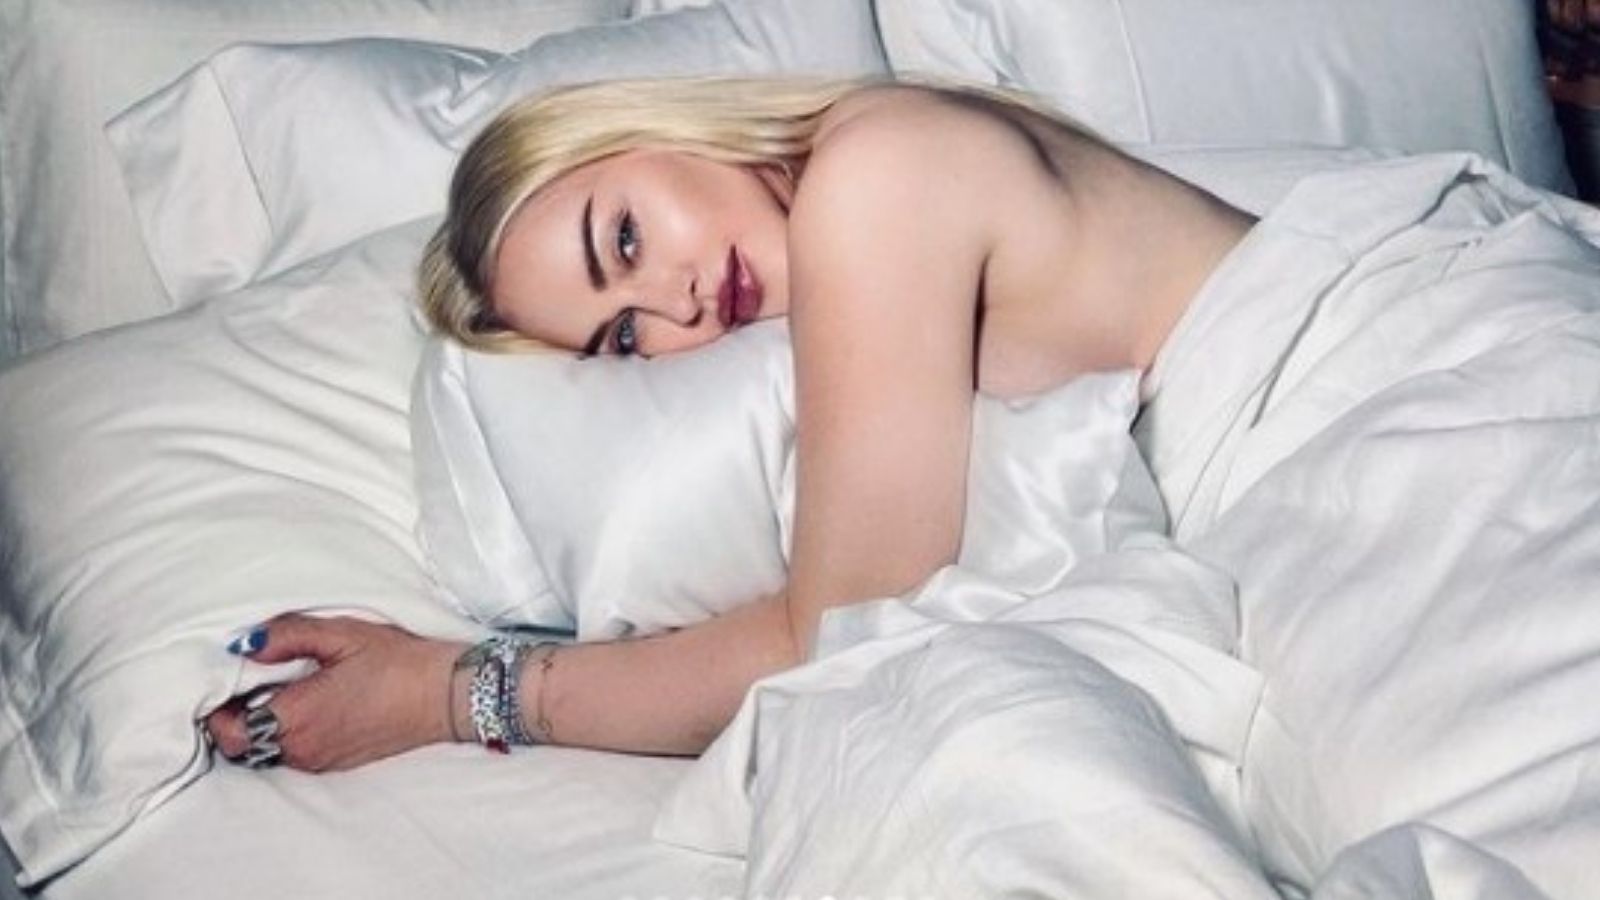 Las sensuales fotos de Madonna que escandalizan las redes sociales